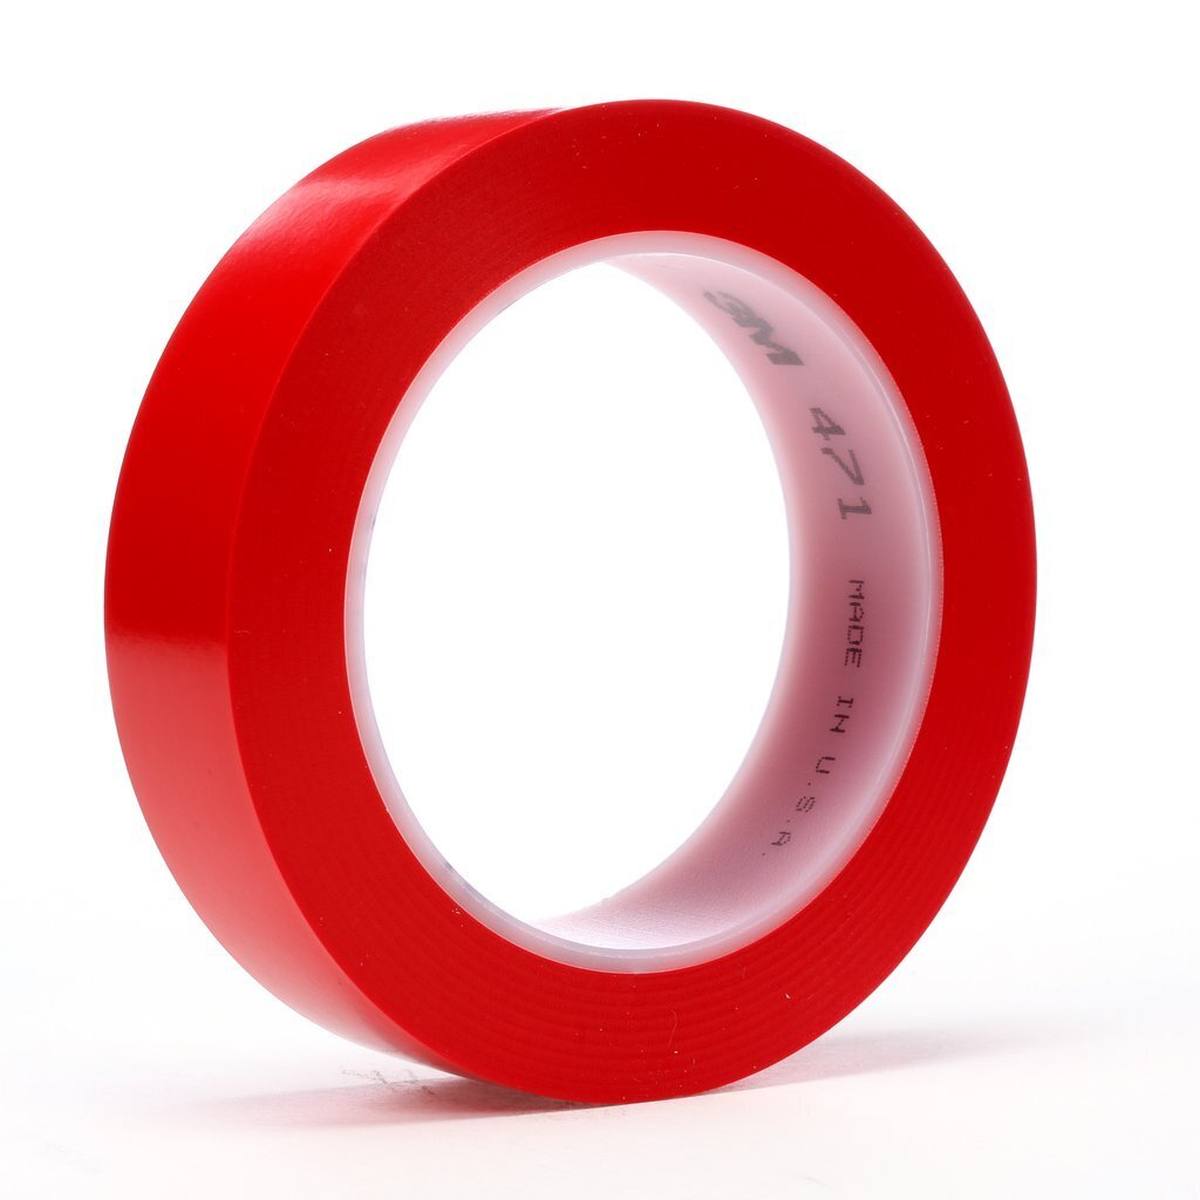 Nastro adesivo 3M in PVC morbido 471 F, rosso, 25 mm x 33 m, 0,13 mm